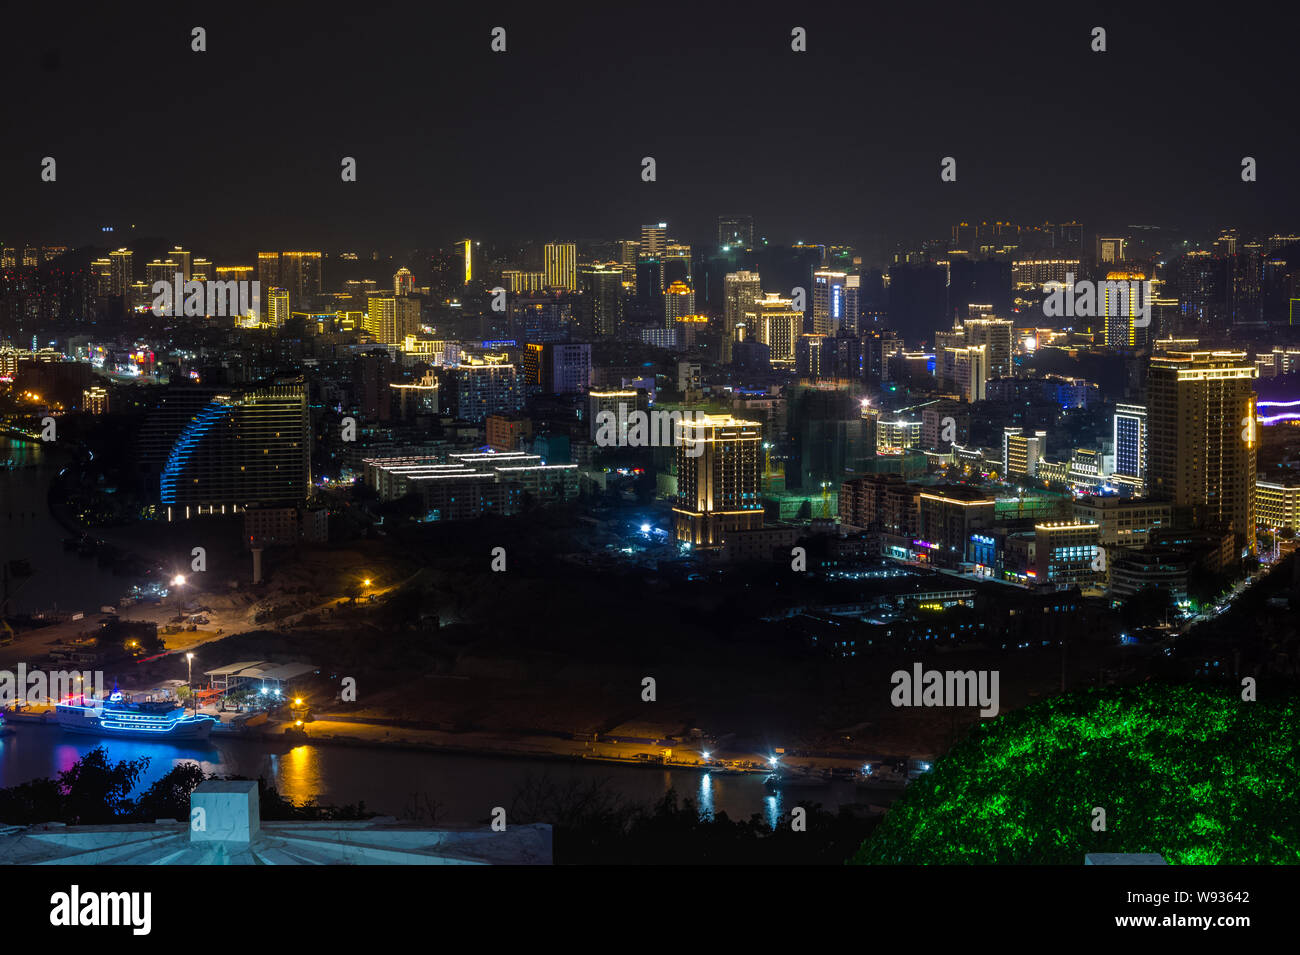 Vista nocturna de la ciudad de Sanya, desde la plataforma de observación. El ciervo gira la cabeza de la isla de Hanan. China Foto de stock